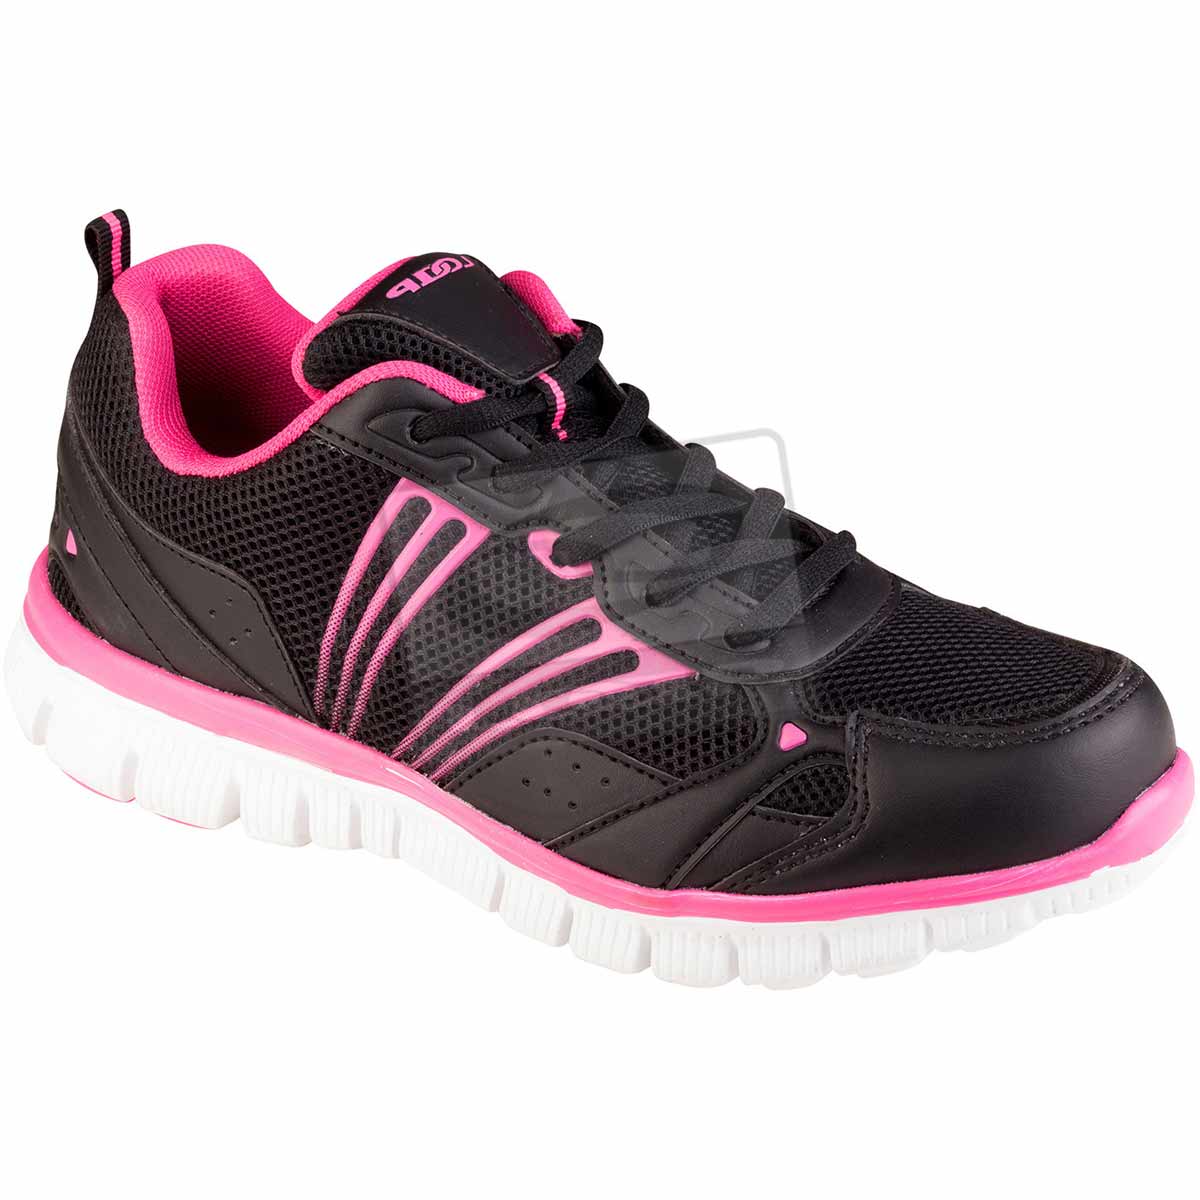 JOYNER W - Women's sports running shoes